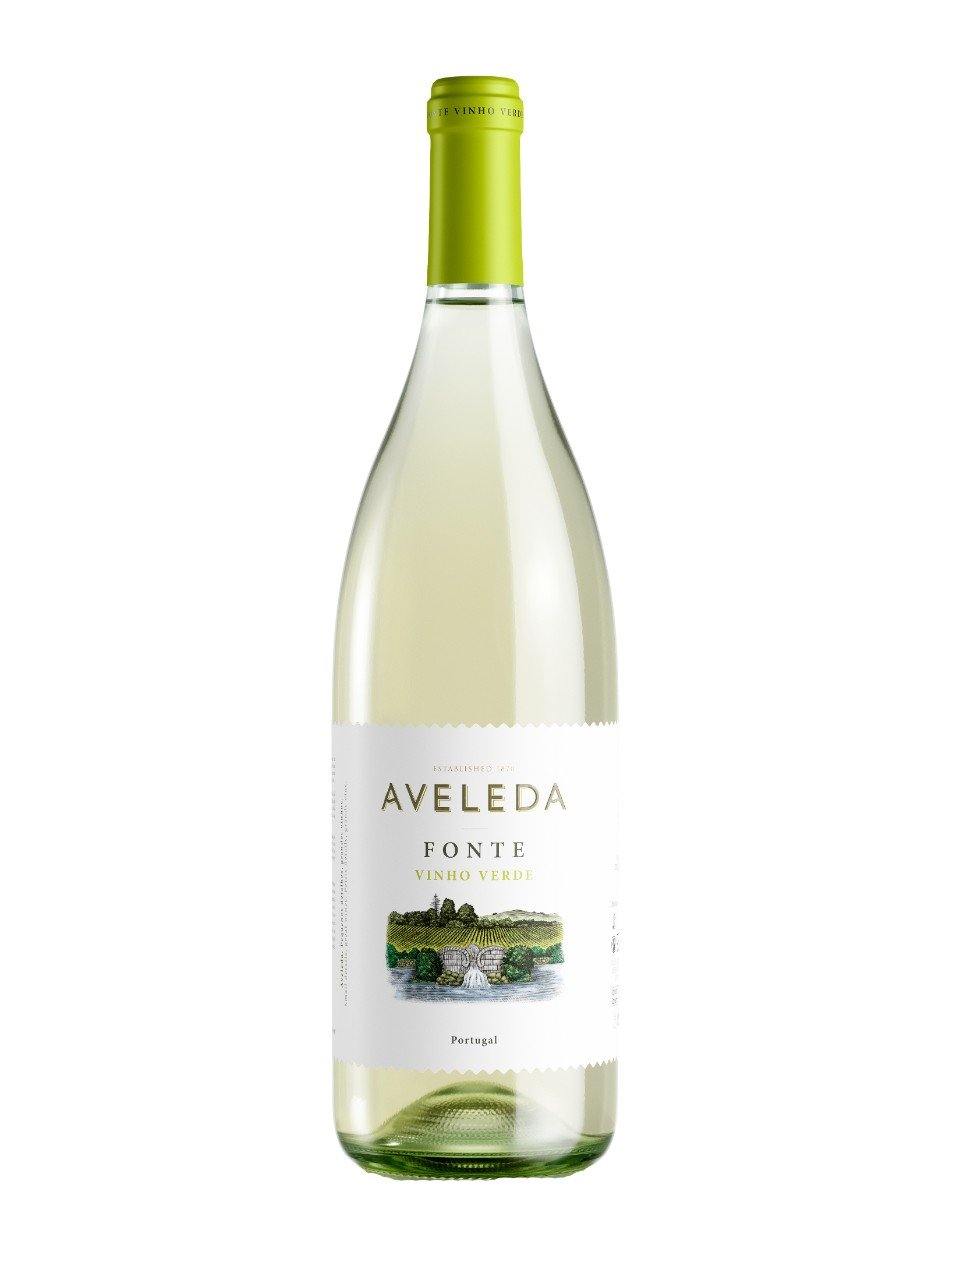 Aveleda Vinho Verde Fonte 1500 mL bottle - Speedy Booze